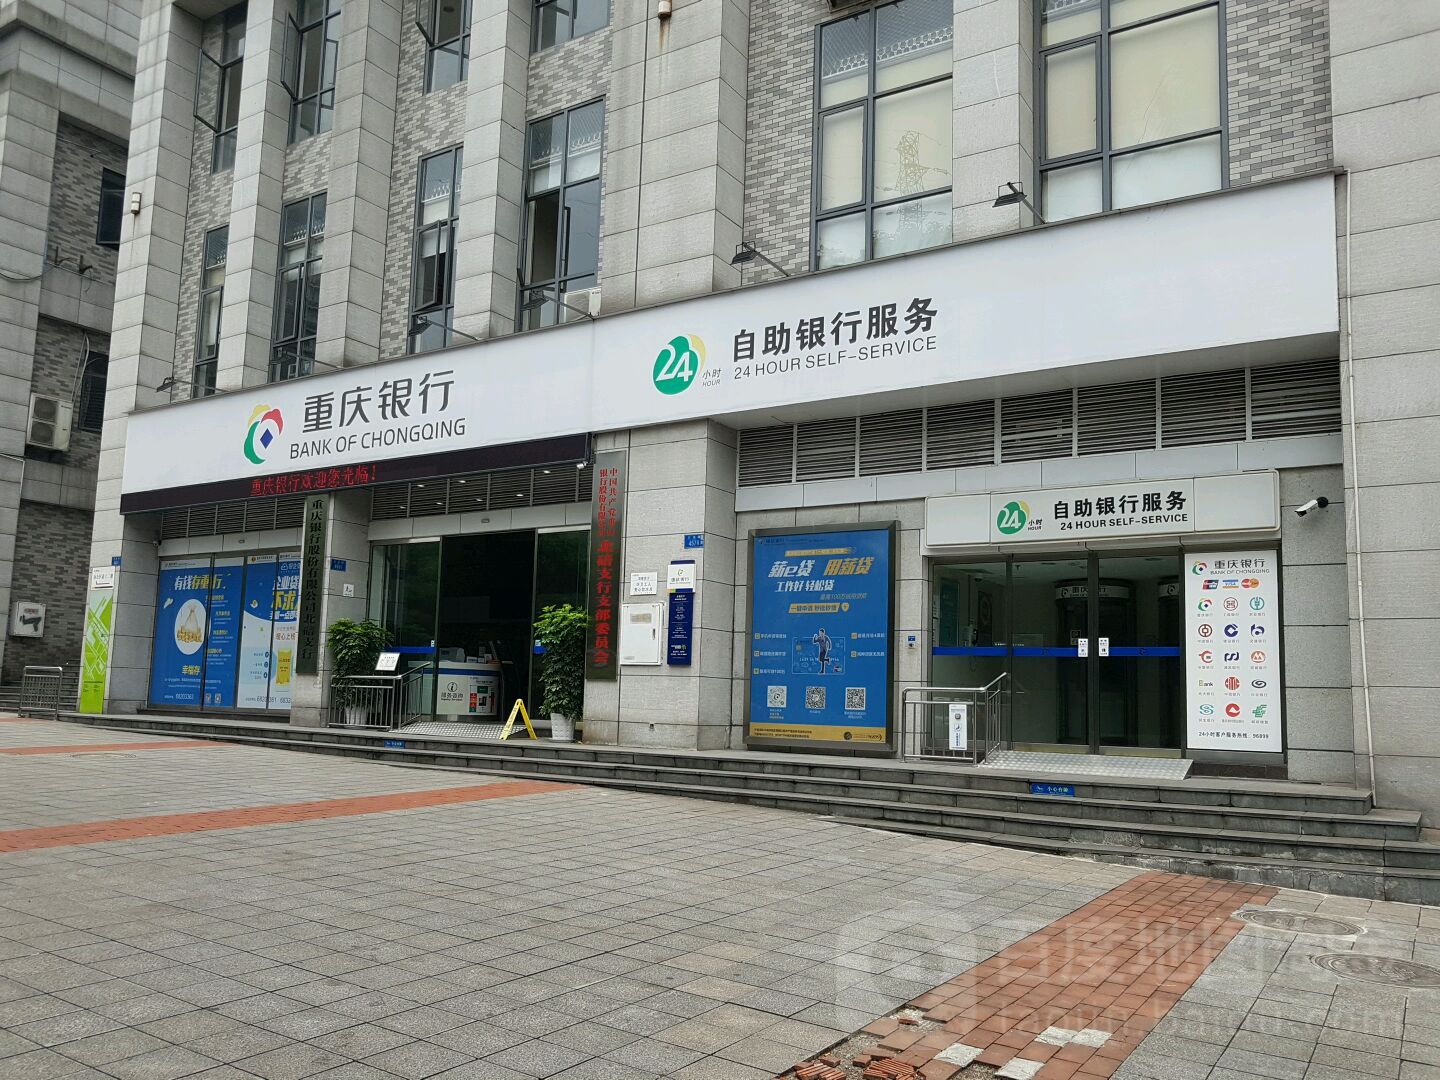 重慶銀行24小時自助銀行服務(北碚支行)